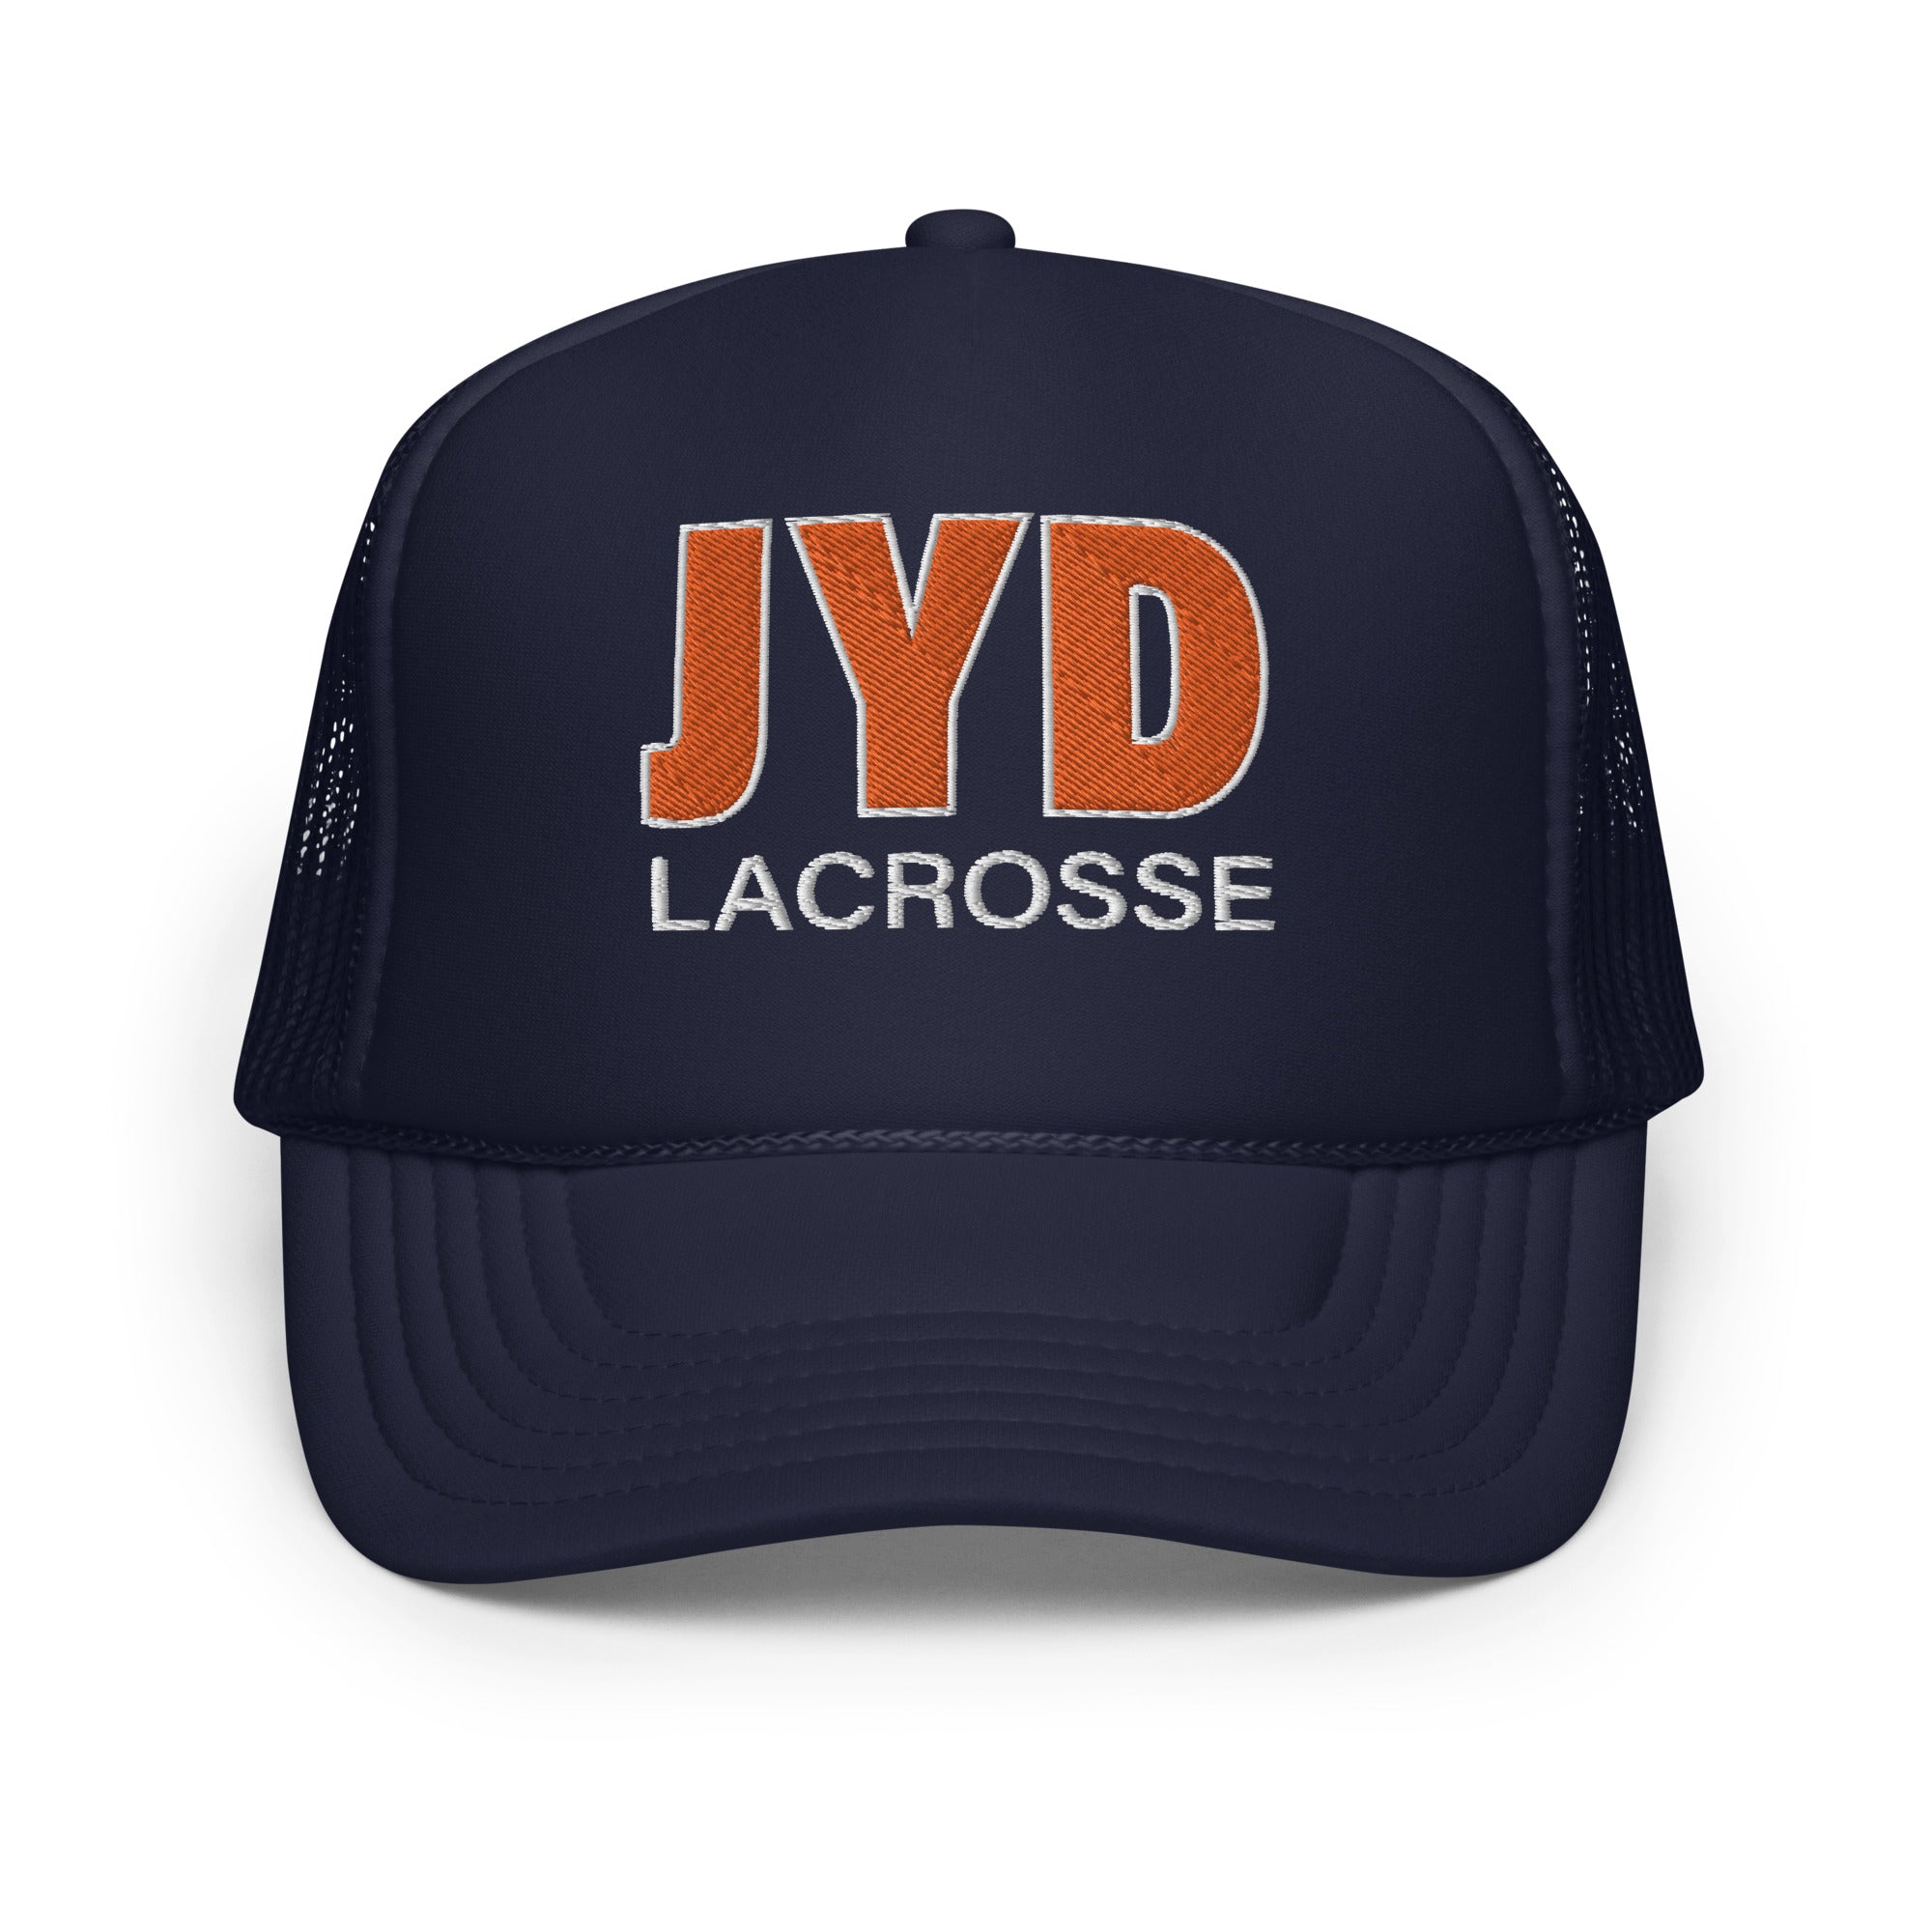 JYD Foam trucker hat